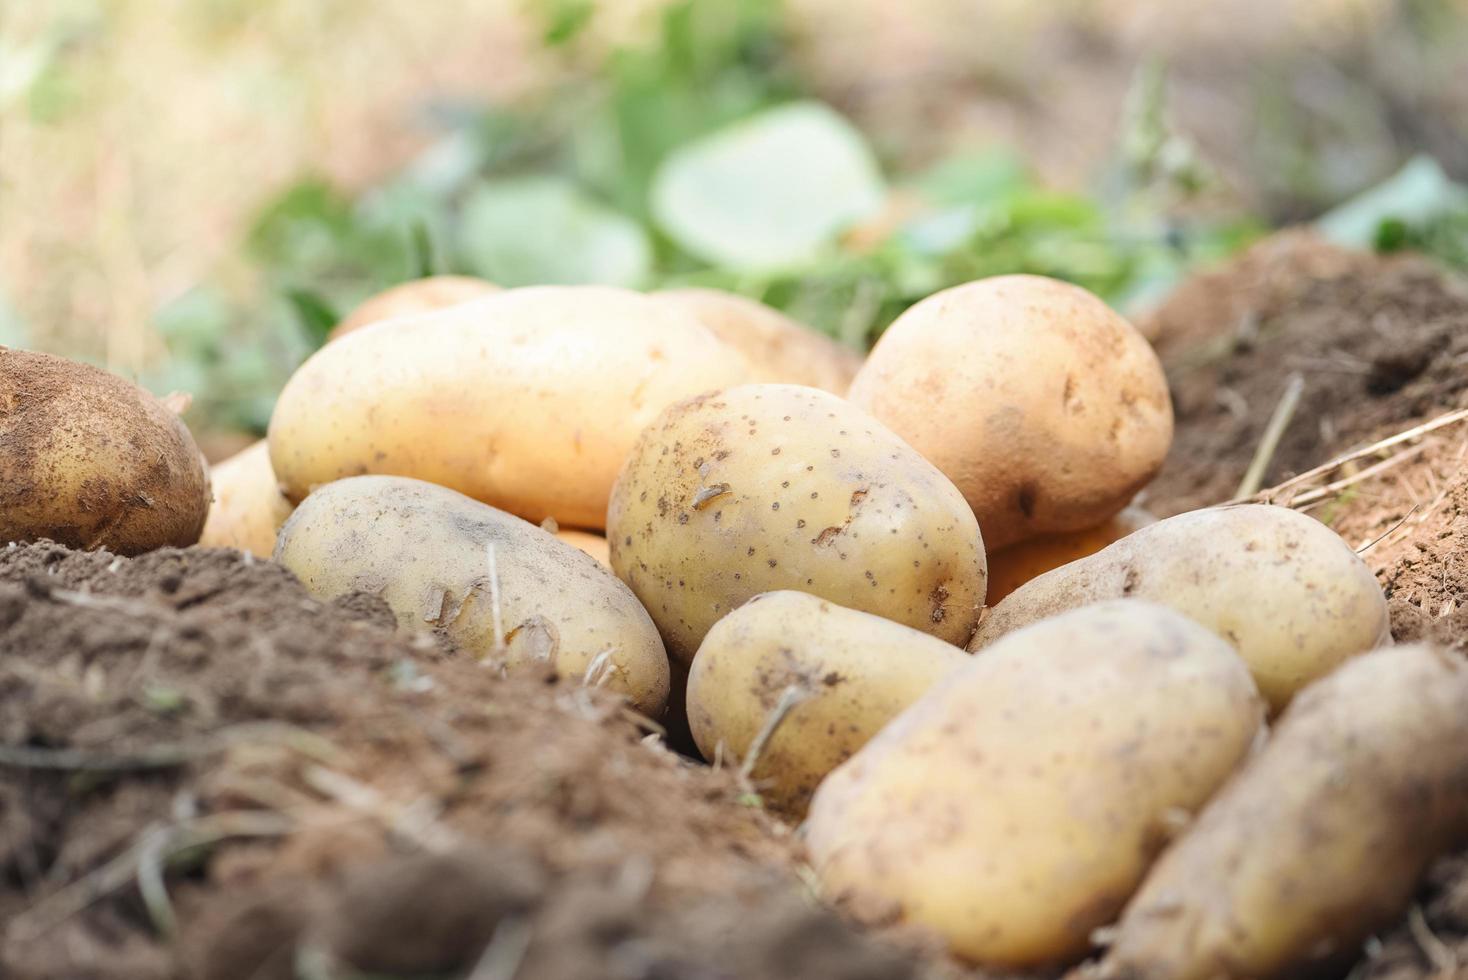 planta de patata fresca, cosecha de patatas maduras productos agrícolas del campo de patatas foto